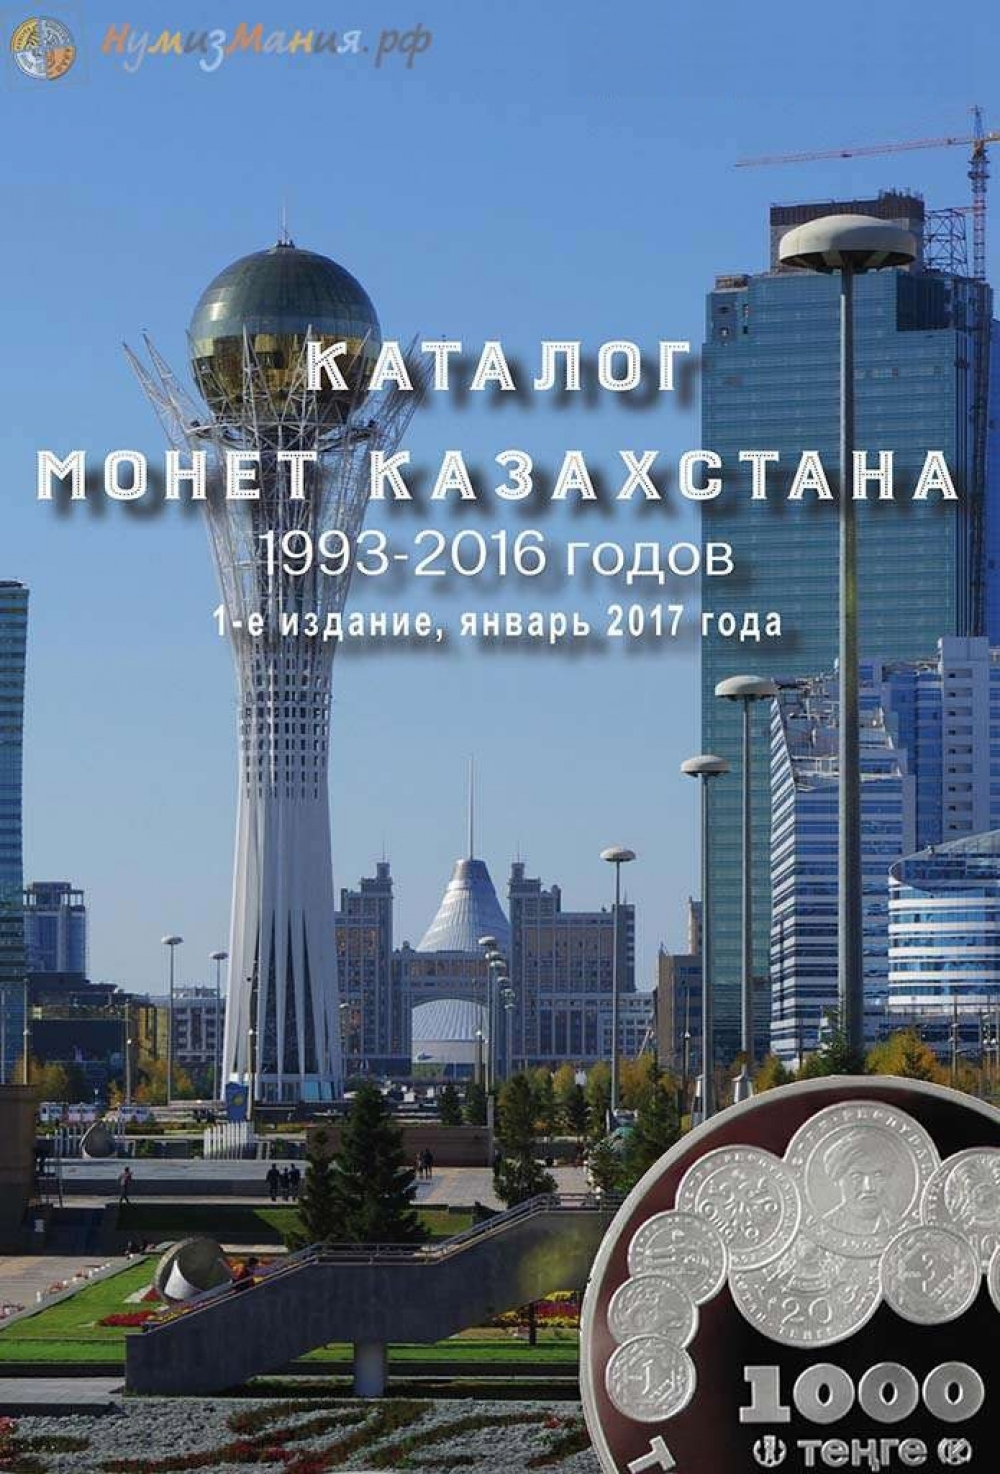 Каталог Нумизмания "Монеты Казахстана 1993-2016 годов" 1-е издание, январь 2017 года - 768